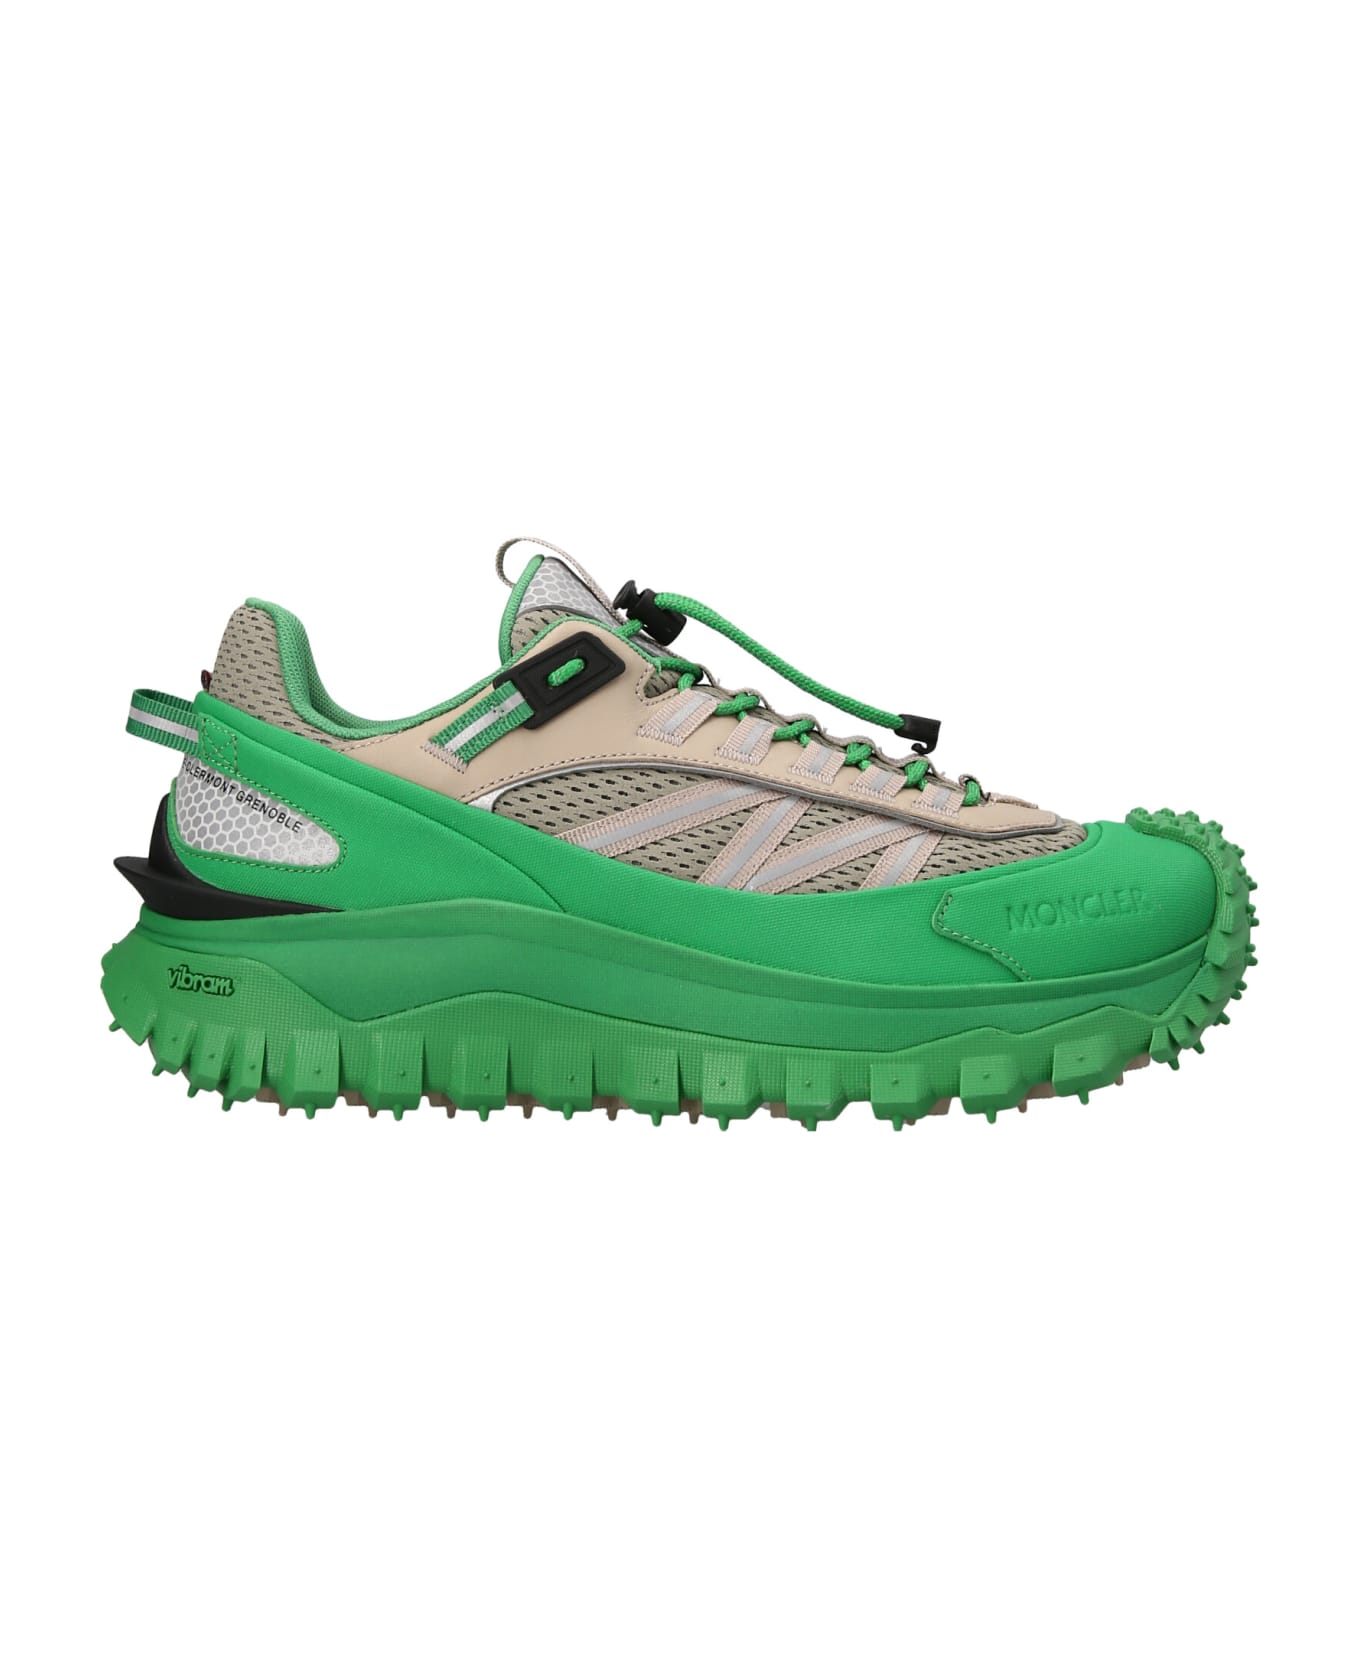 Moncler Grenoble 'trailgrip' Sneakers - Green